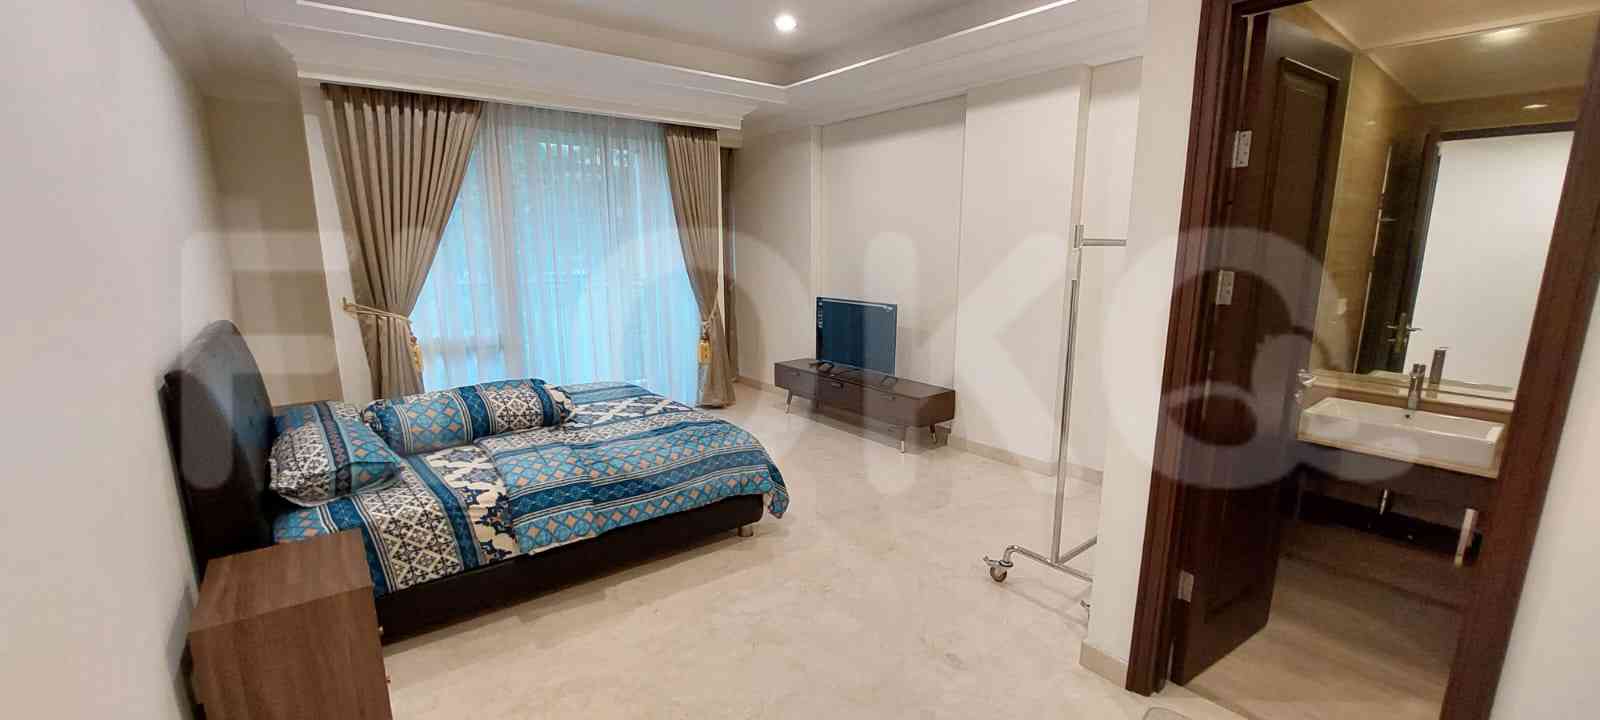 Tipe 3 Kamar Tidur di Lantai 2 untuk disewakan di Pondok Indah Residence - fpo5e5 5